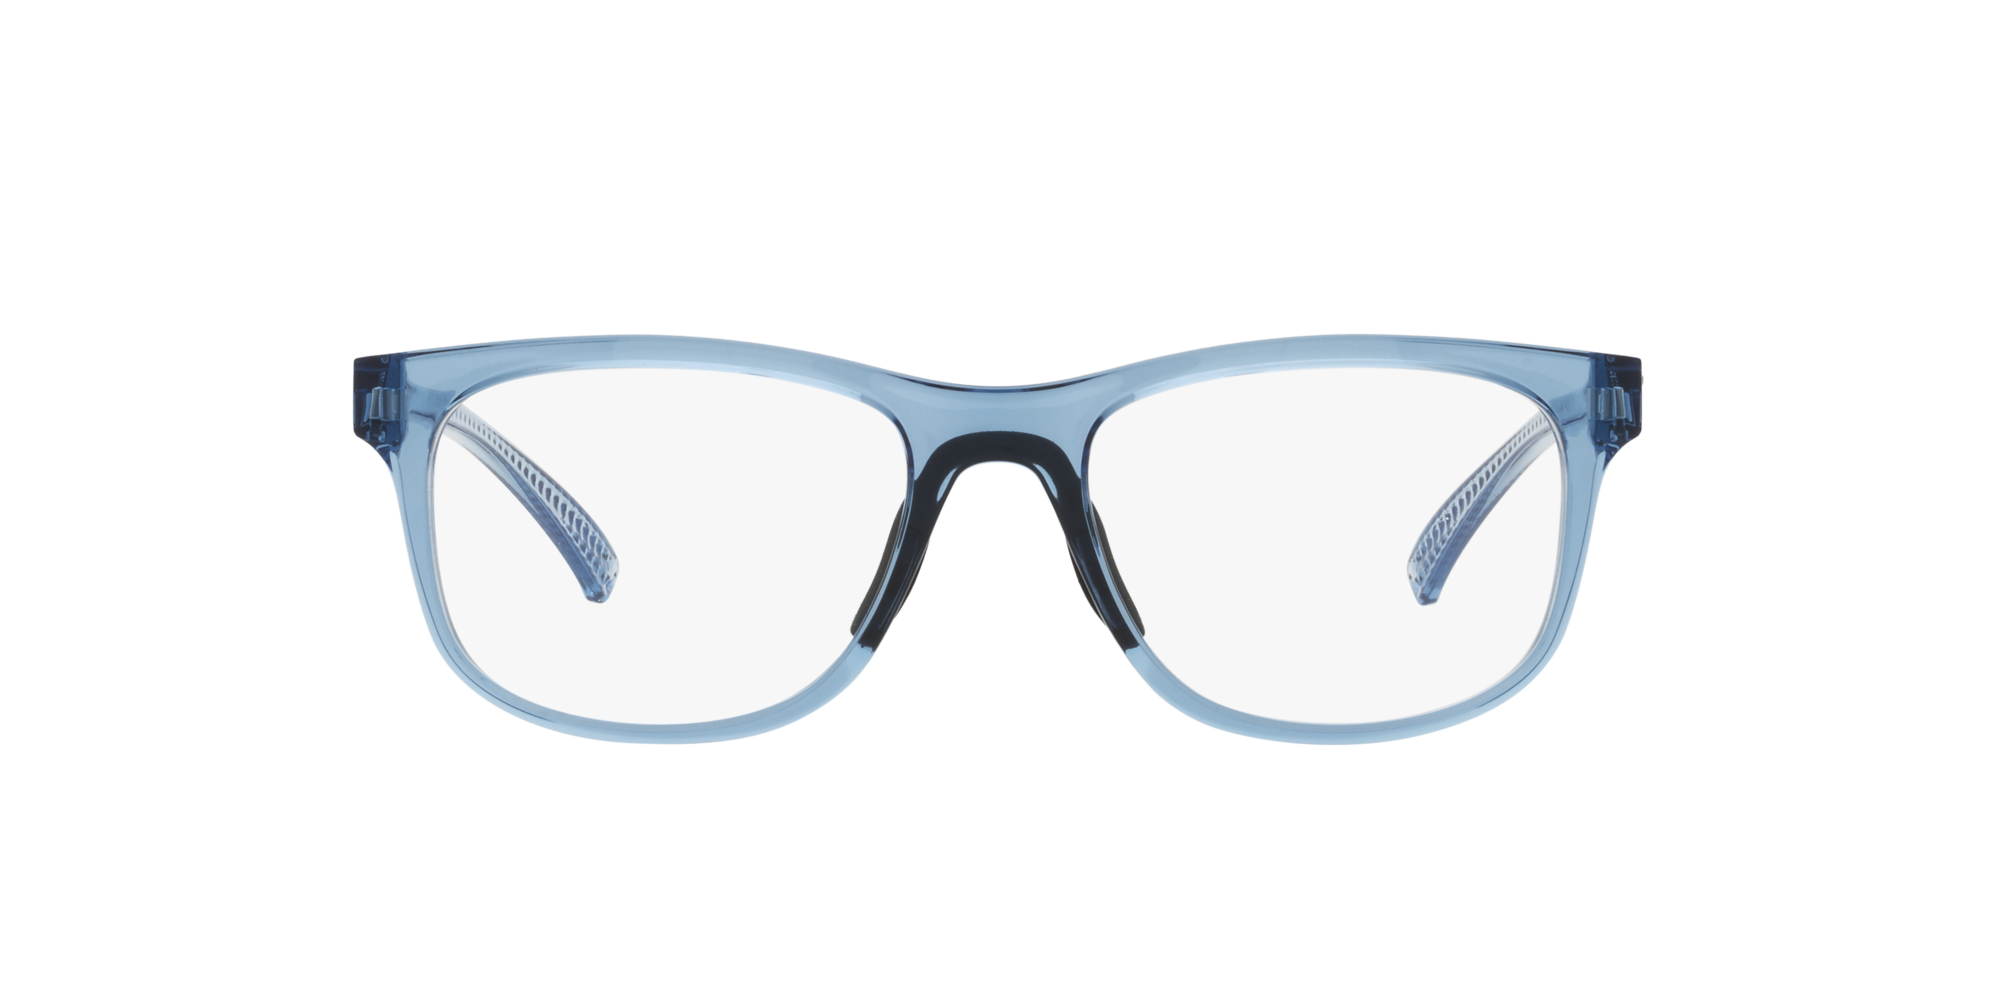 Das Bild zeigt die Korrektionsbrille OX8175 817506 von der Marke Oakley  in blau transparent.